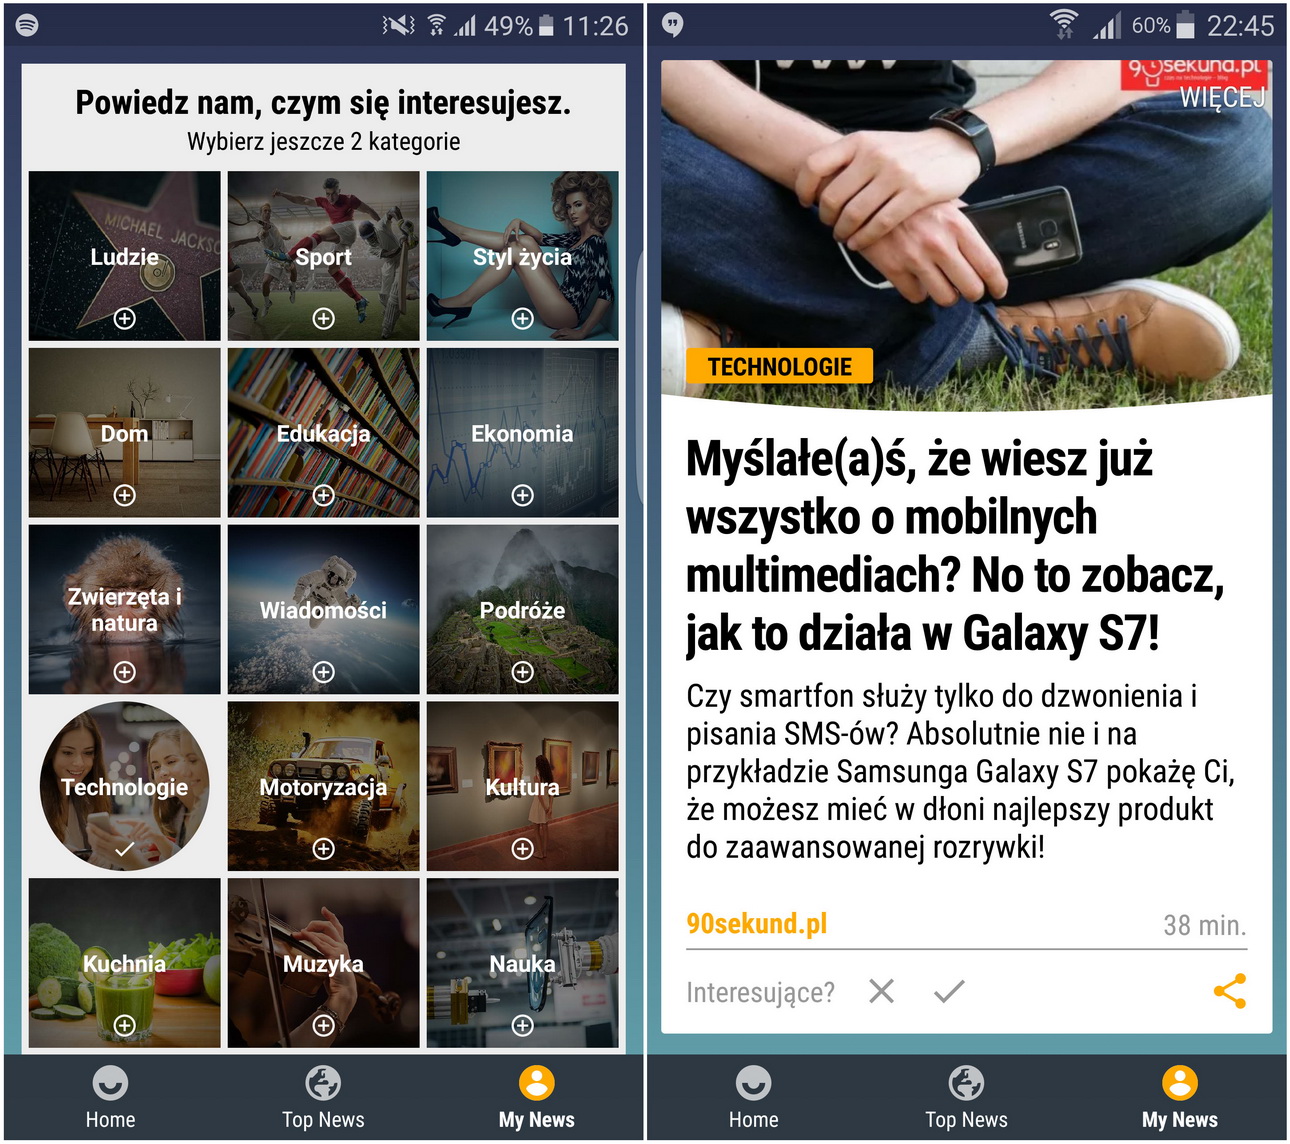 Samsung Galaxy S7 (SM-G935) Upday- recenzja 90sekund.pl